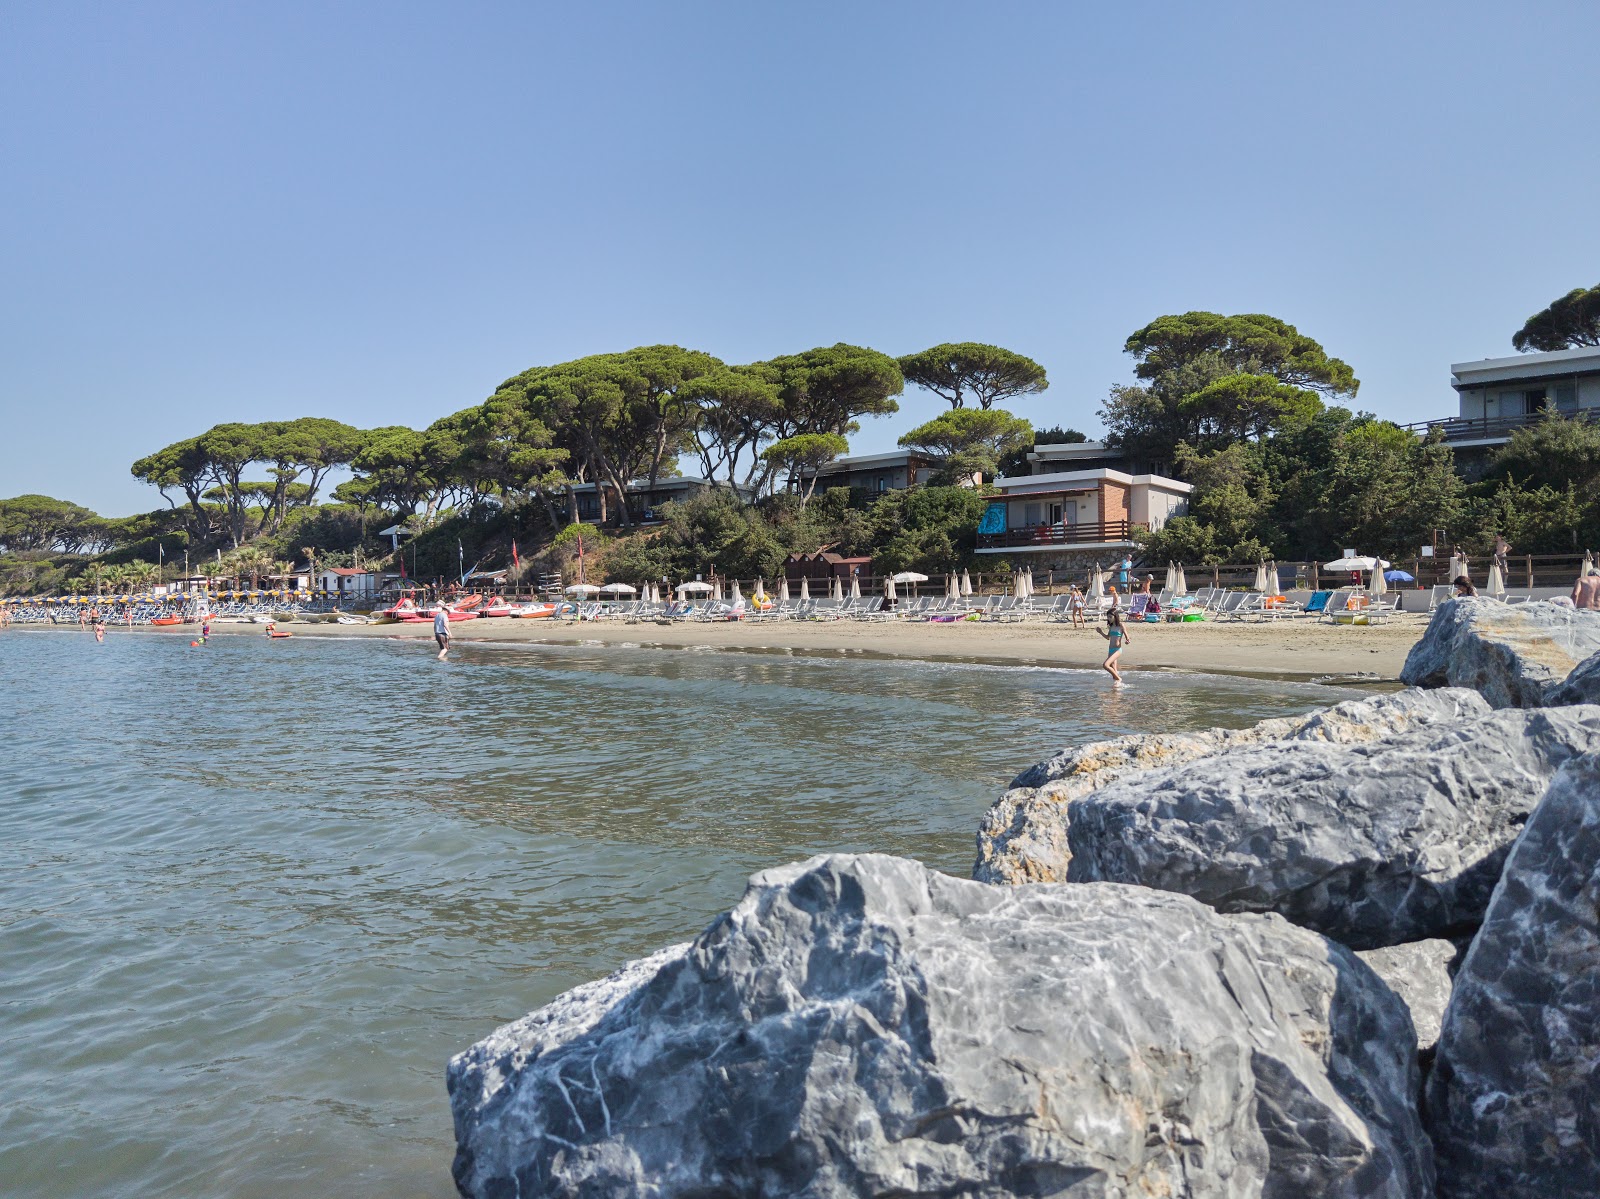 Foto af Spiaggia Golfo del Sole - populært sted blandt afslapningskendere